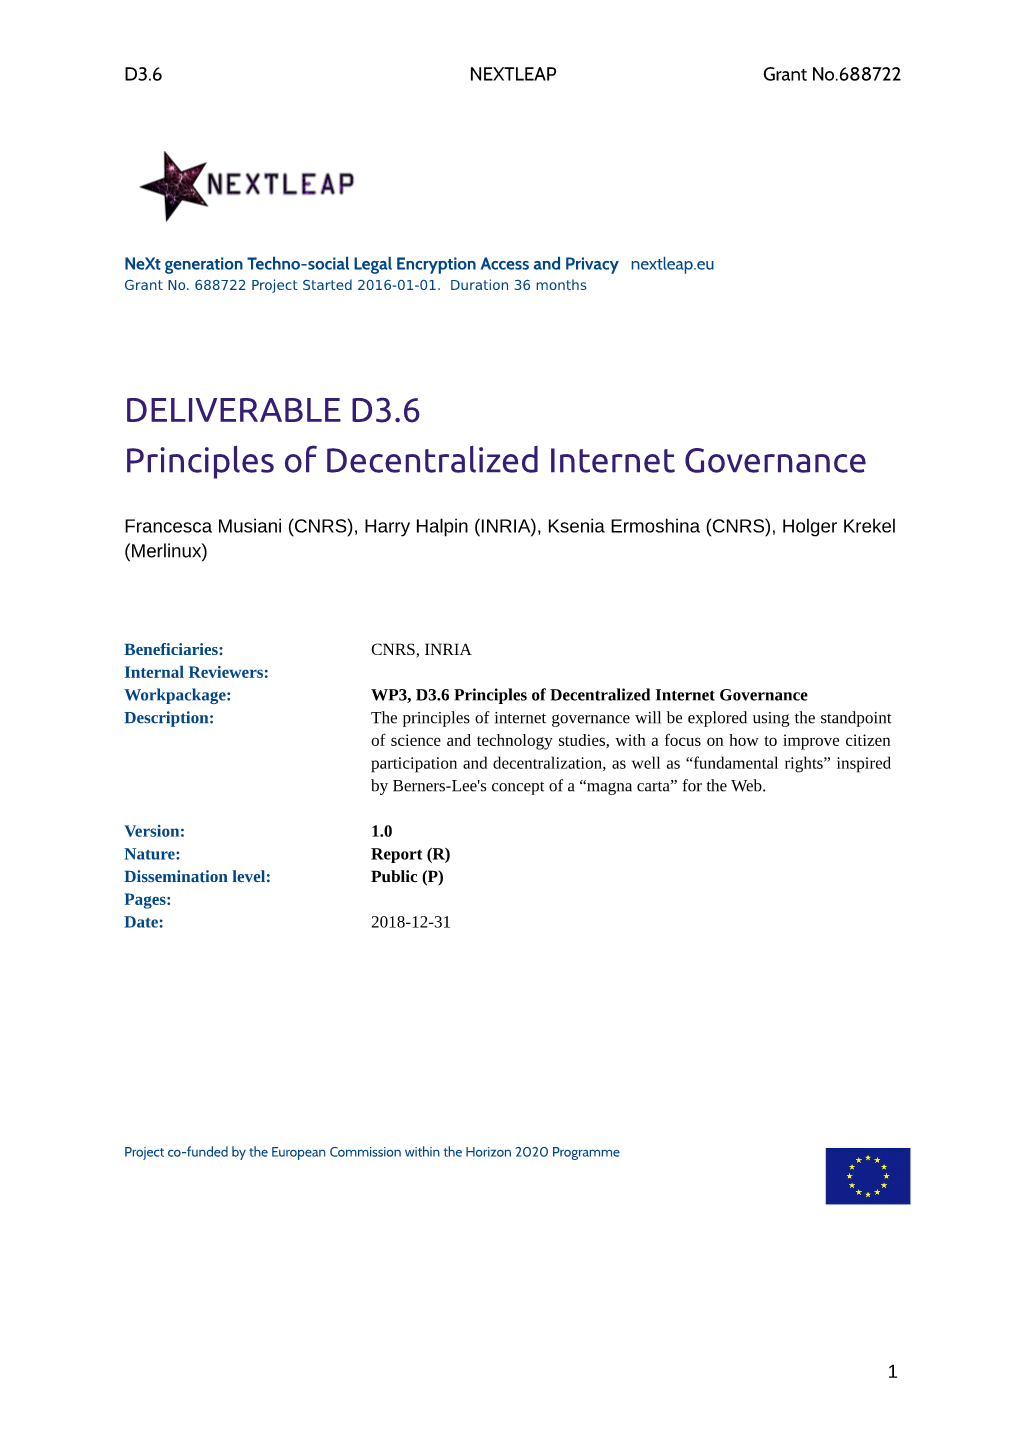 D3.6 -- Principles of Decentralized Internet Governance